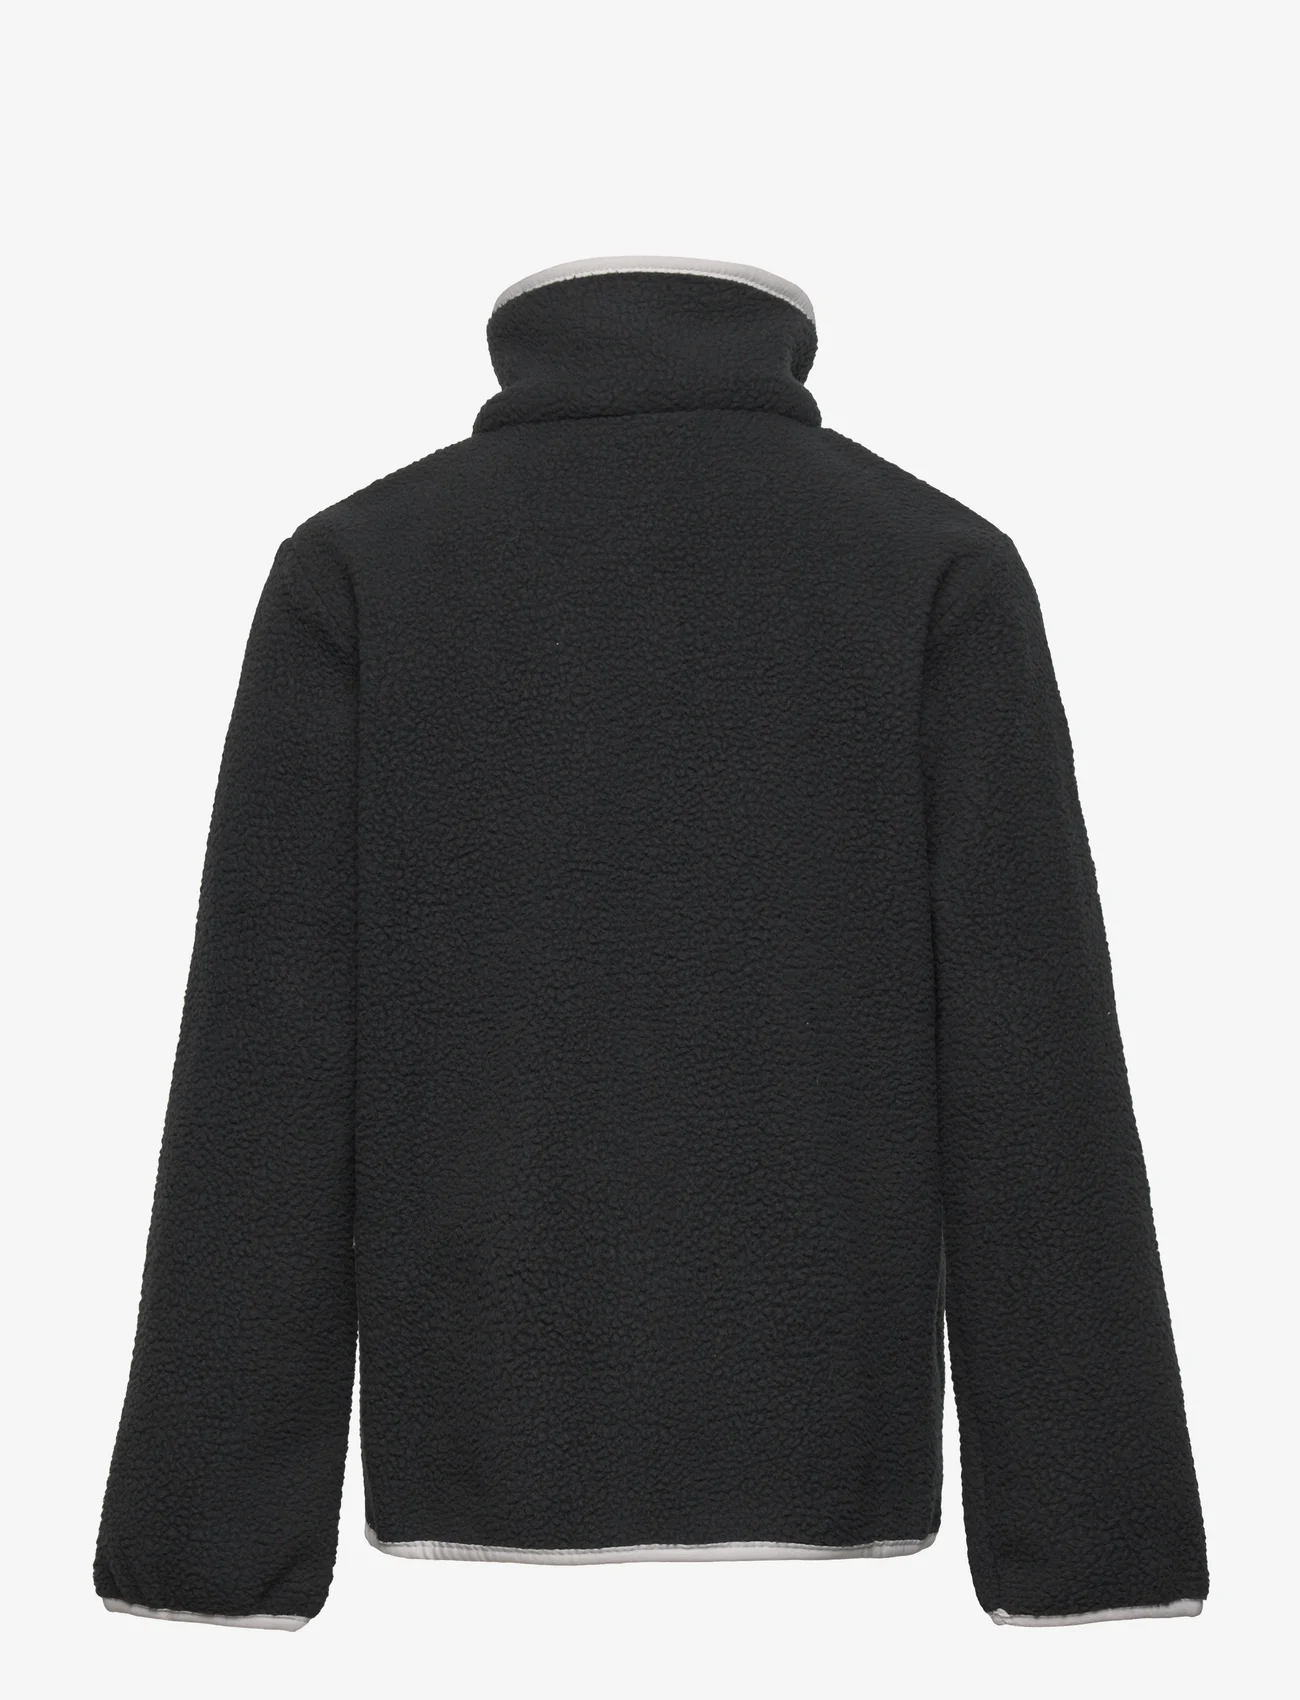 Columbia Sportswear - Helvetia Half Snap Fleece - laagste prijzen - black, city grey - 1